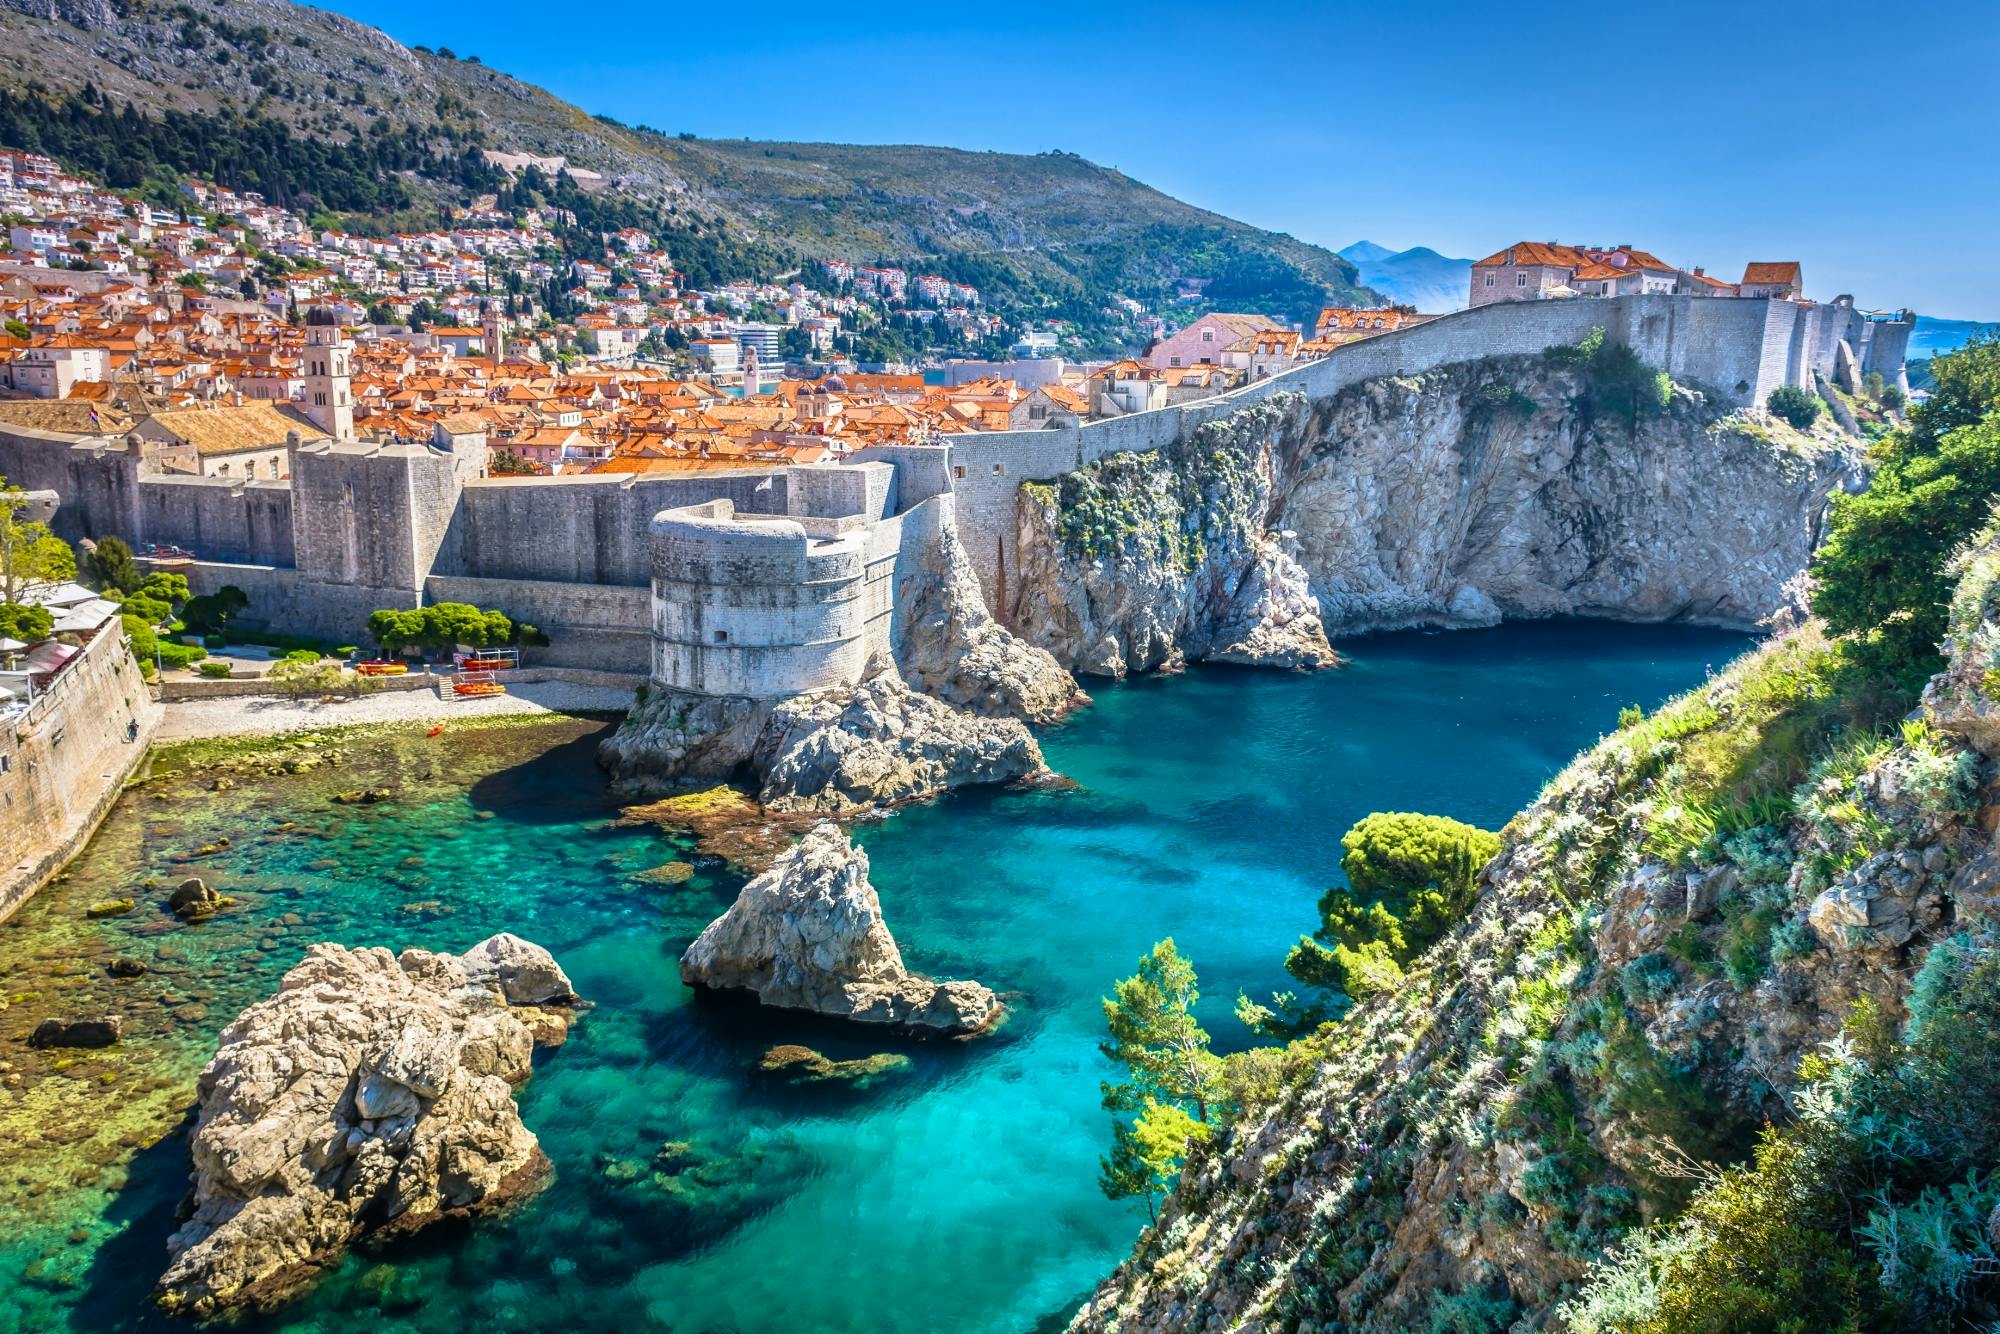 Dubrovnik full-day tour from Split